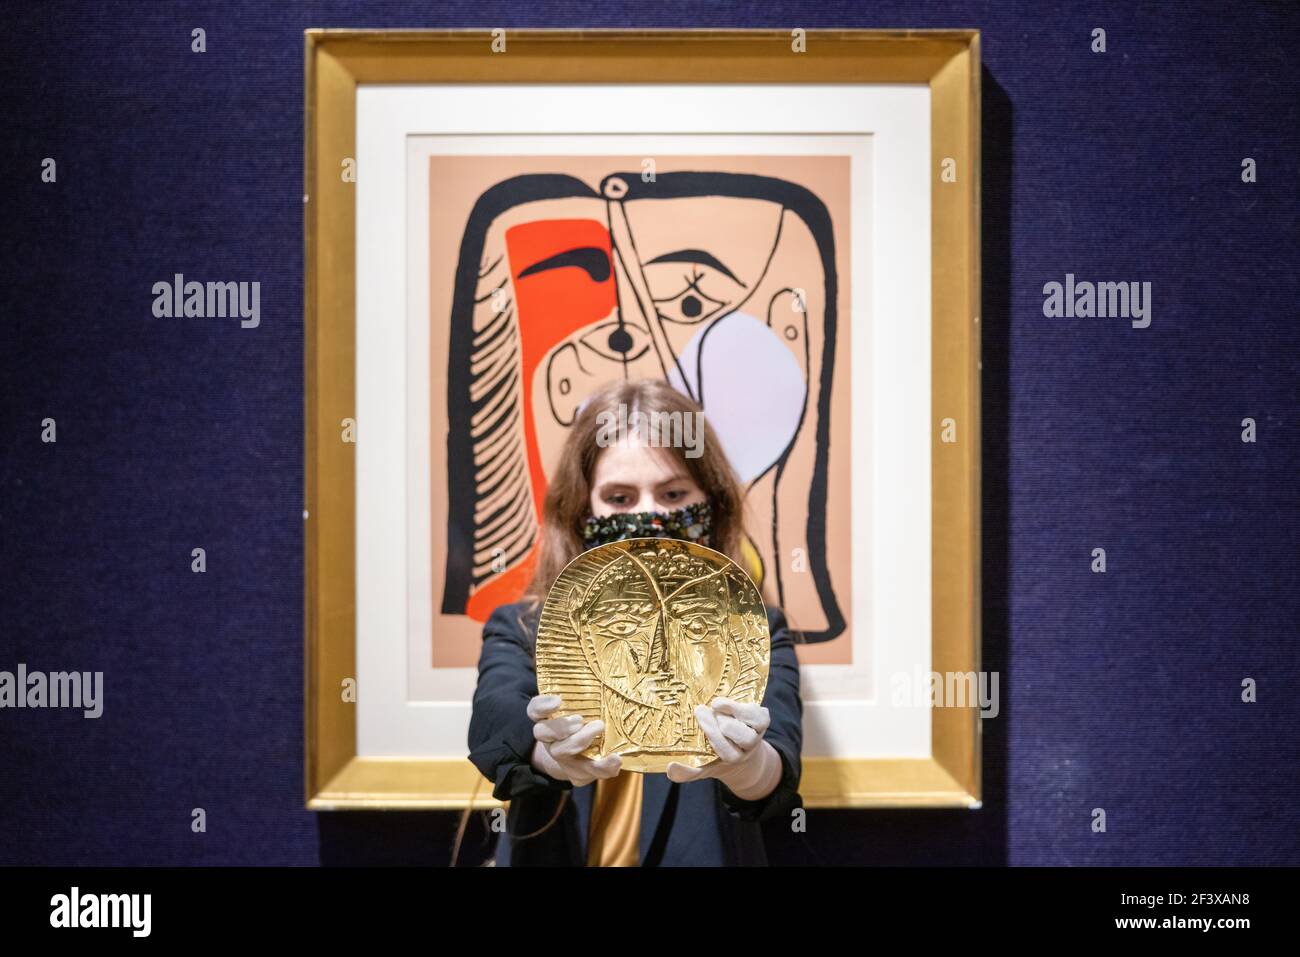 Un dipendente di Bonhams detiene la "Visage de Faune", repoussŽ una piastra d'oro da 22 carati prodotta da Pablo Picasso e dall'orafo Franois Hugo che ha una stima di £250,000-350,000, insieme a "Portrait de Jacqueline aux Cheveux Lisses" in occasione di una telefonata a Bonhams a Londra, prima della loro prossima vendita Picassomania, Che si svolge il 23 marzo. Data immagine: Giovedì 18 marzo 2021. Foto Stock